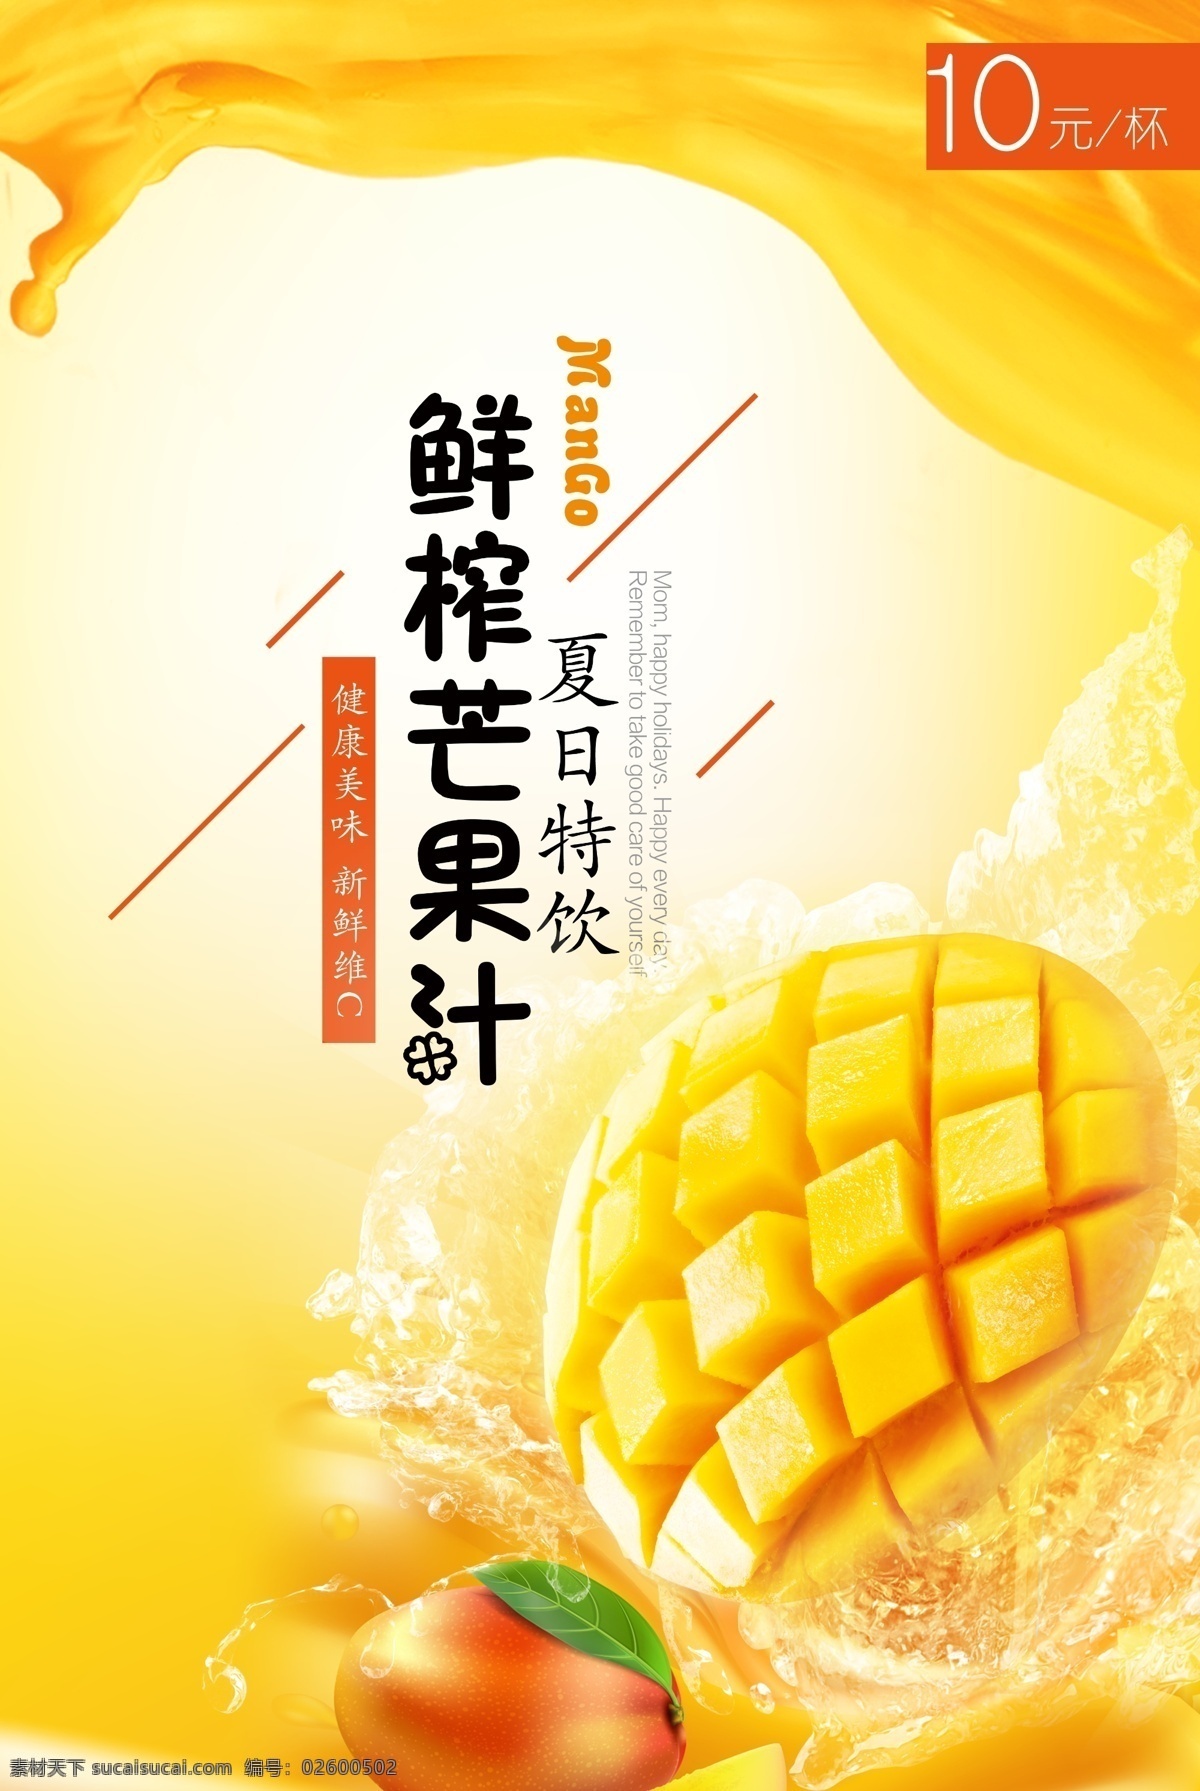 夏日 芒果汁 广告 饮品 果汁 新鲜 鲜榨 海报